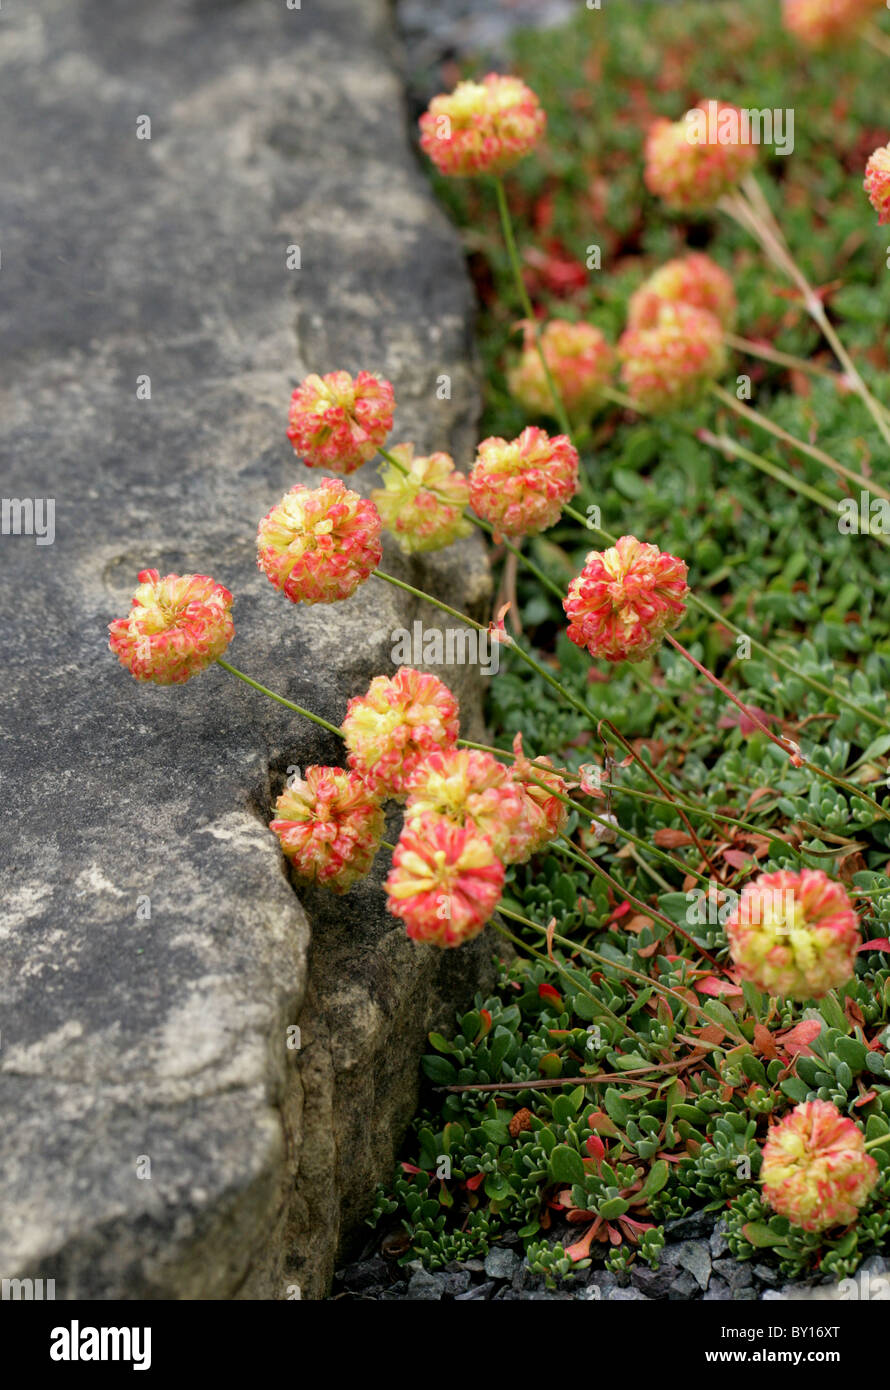 La renouée liseron, Siskiyou Eriogonum siskiyouense, Polygonaceae, en Californie, en Amérique du Nord. Menacé, l'UICN vulnérable. Banque D'Images